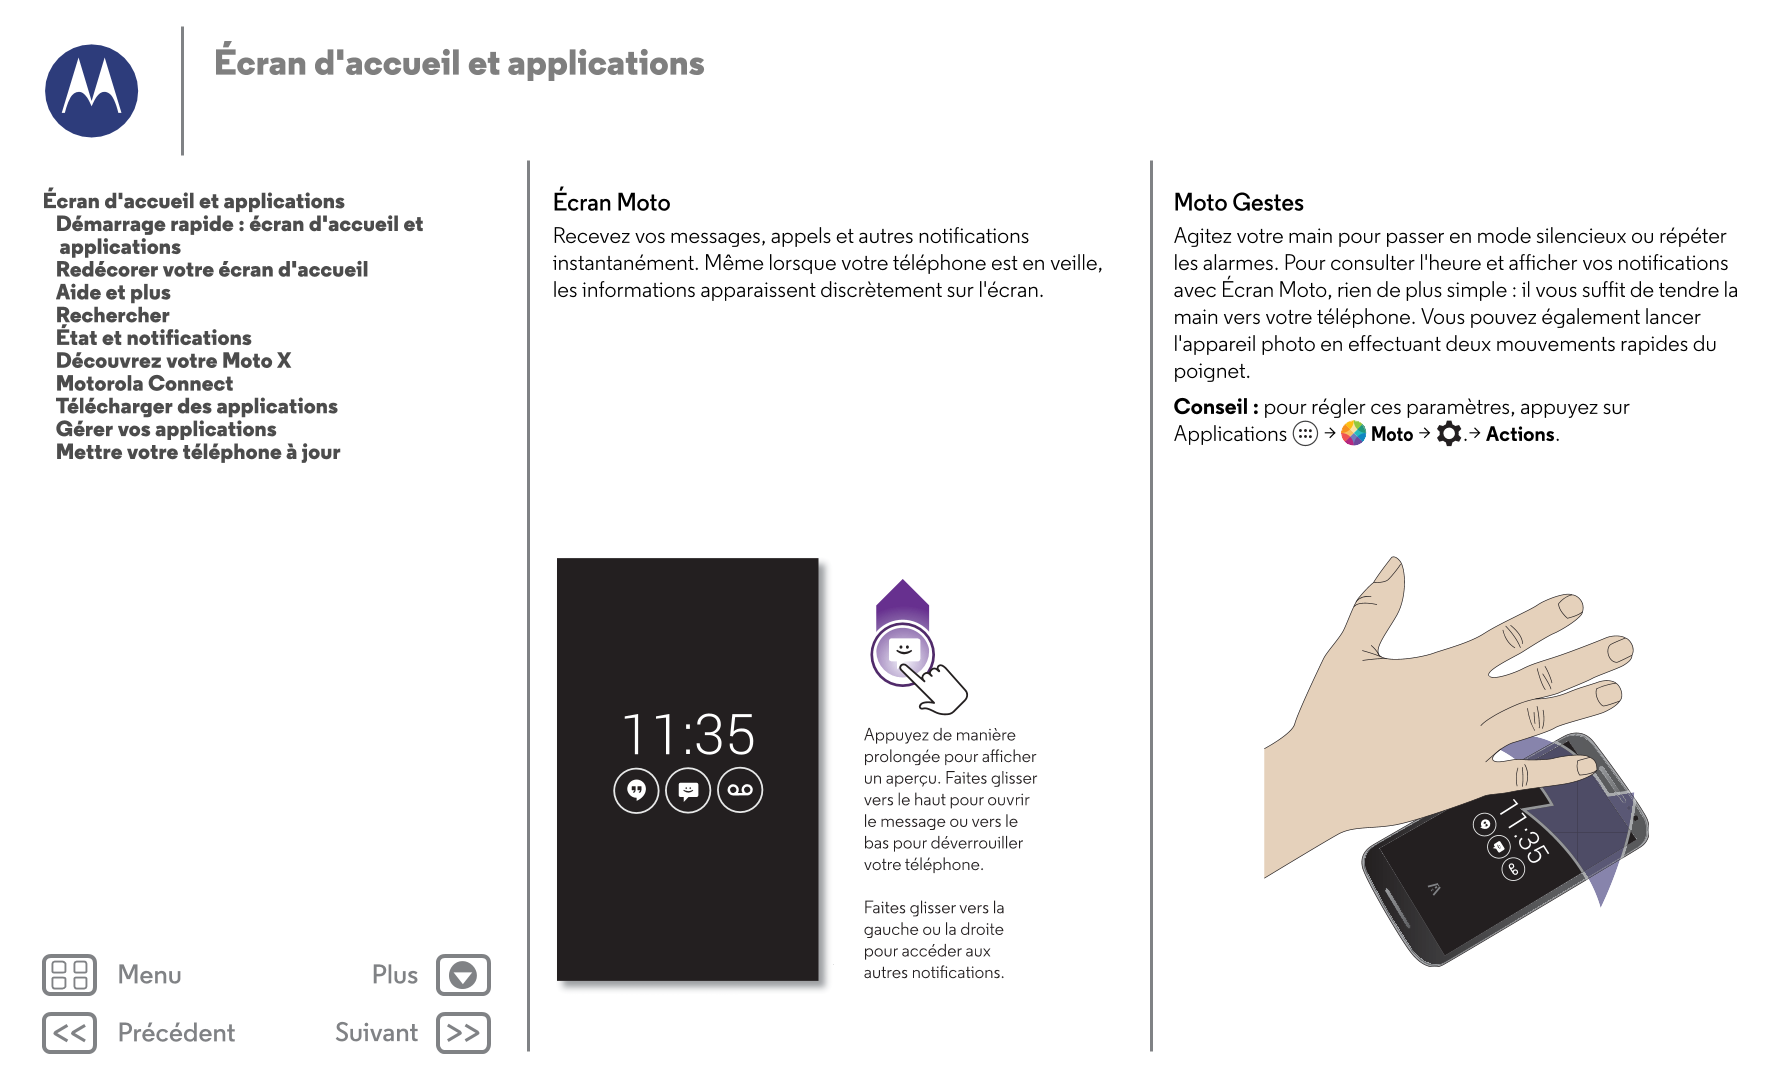 Écran d'accueil  et applications
Écran d'accueil et applications Écran Moto Moto Gestes
   Démarrage rapide : écran d'accueil et